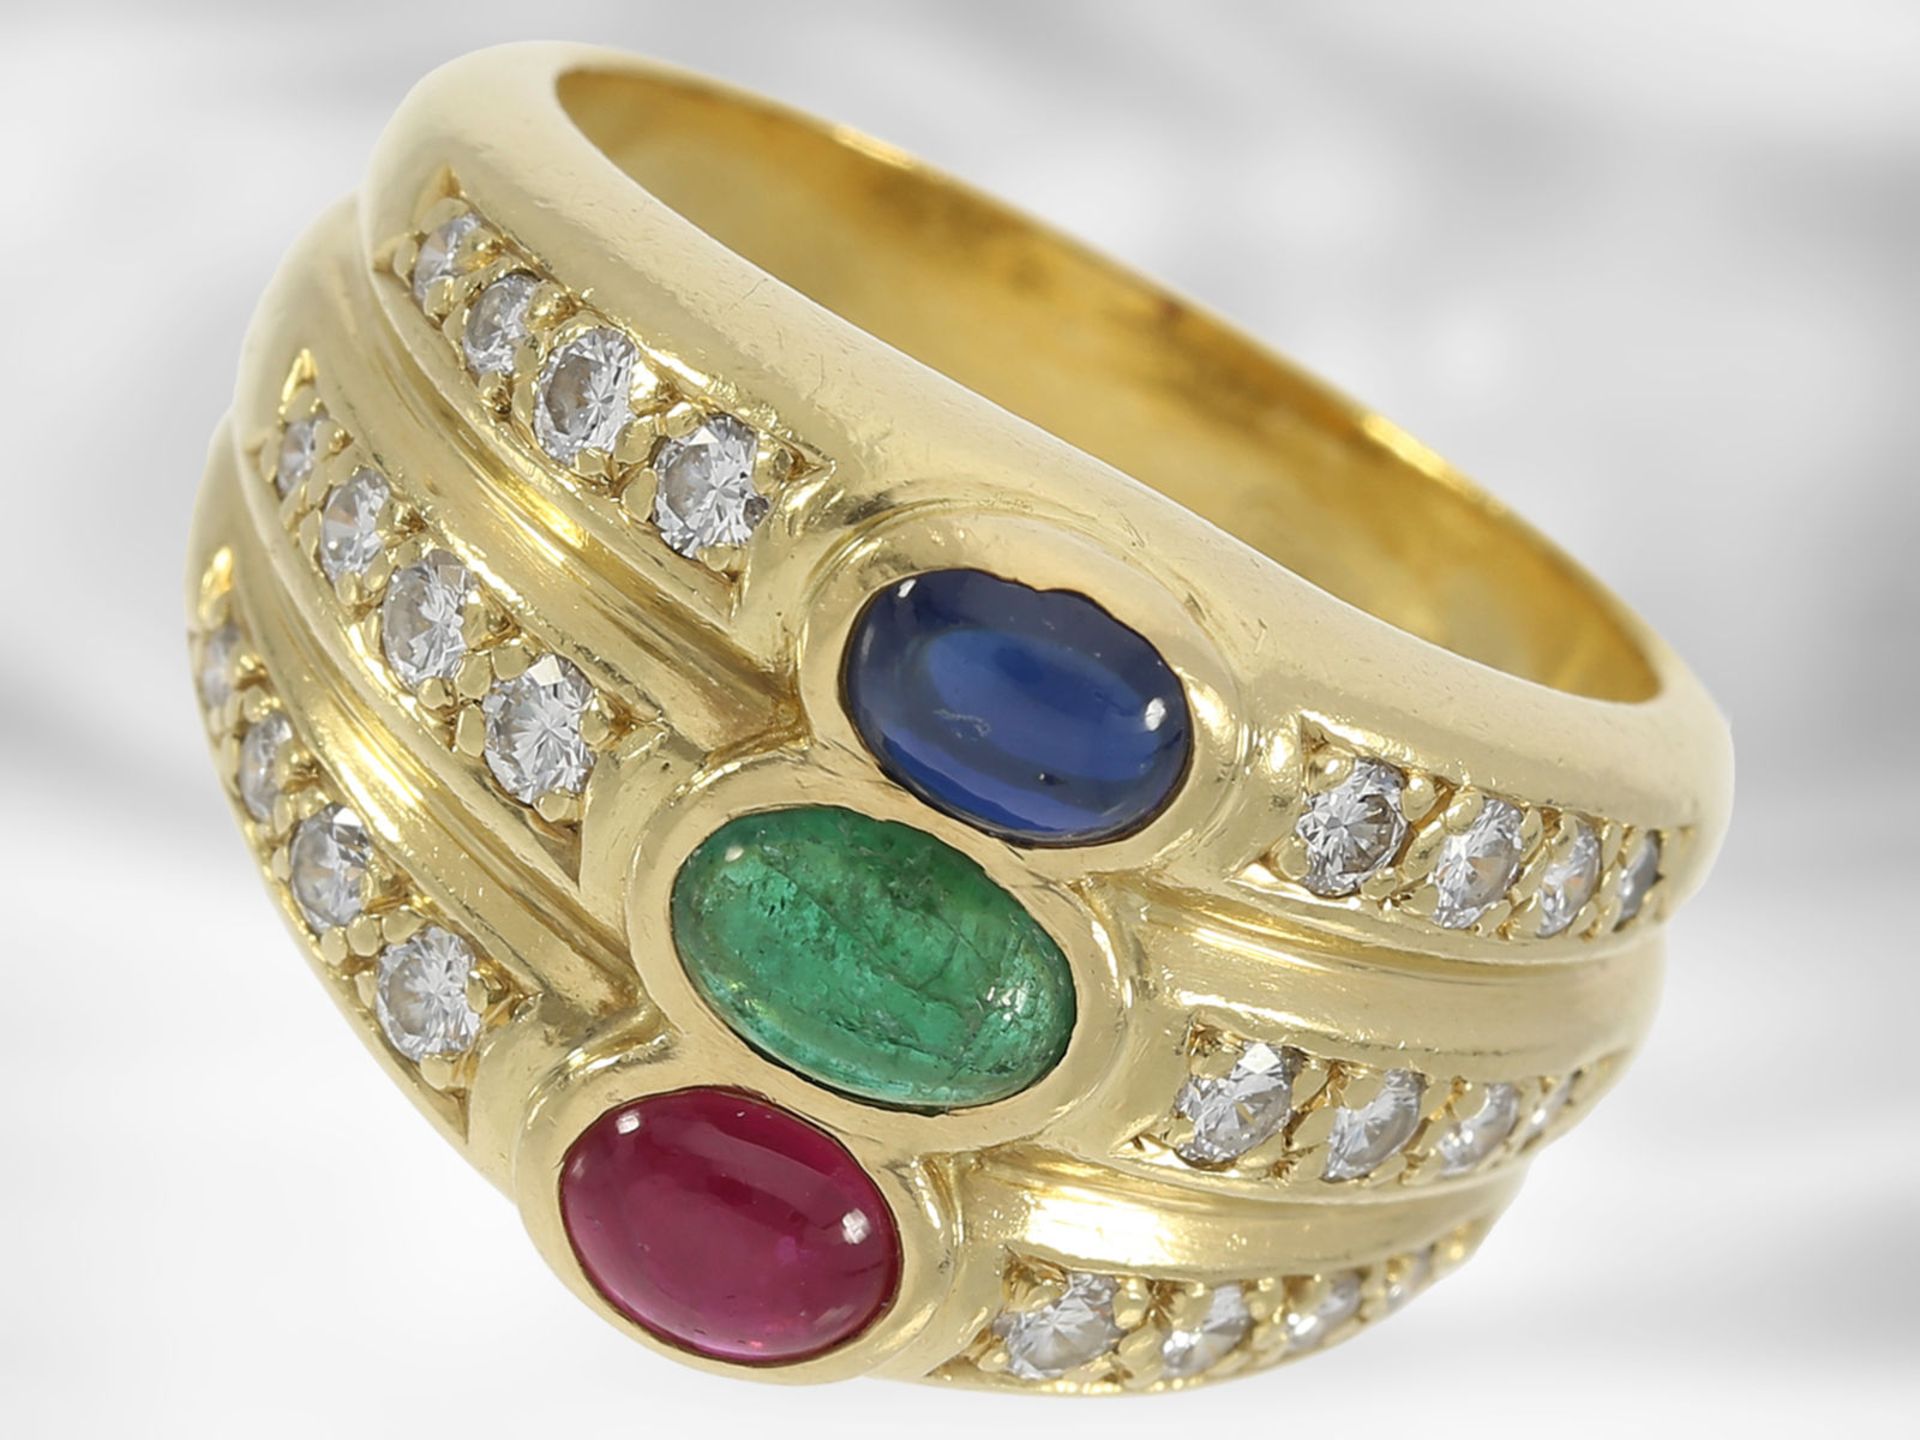 Ring: ehemals sehr teurer vintage Rubin/Saphir/Smaragd-Ring mit Brillanten, insgesamt ca. 2,11ct,